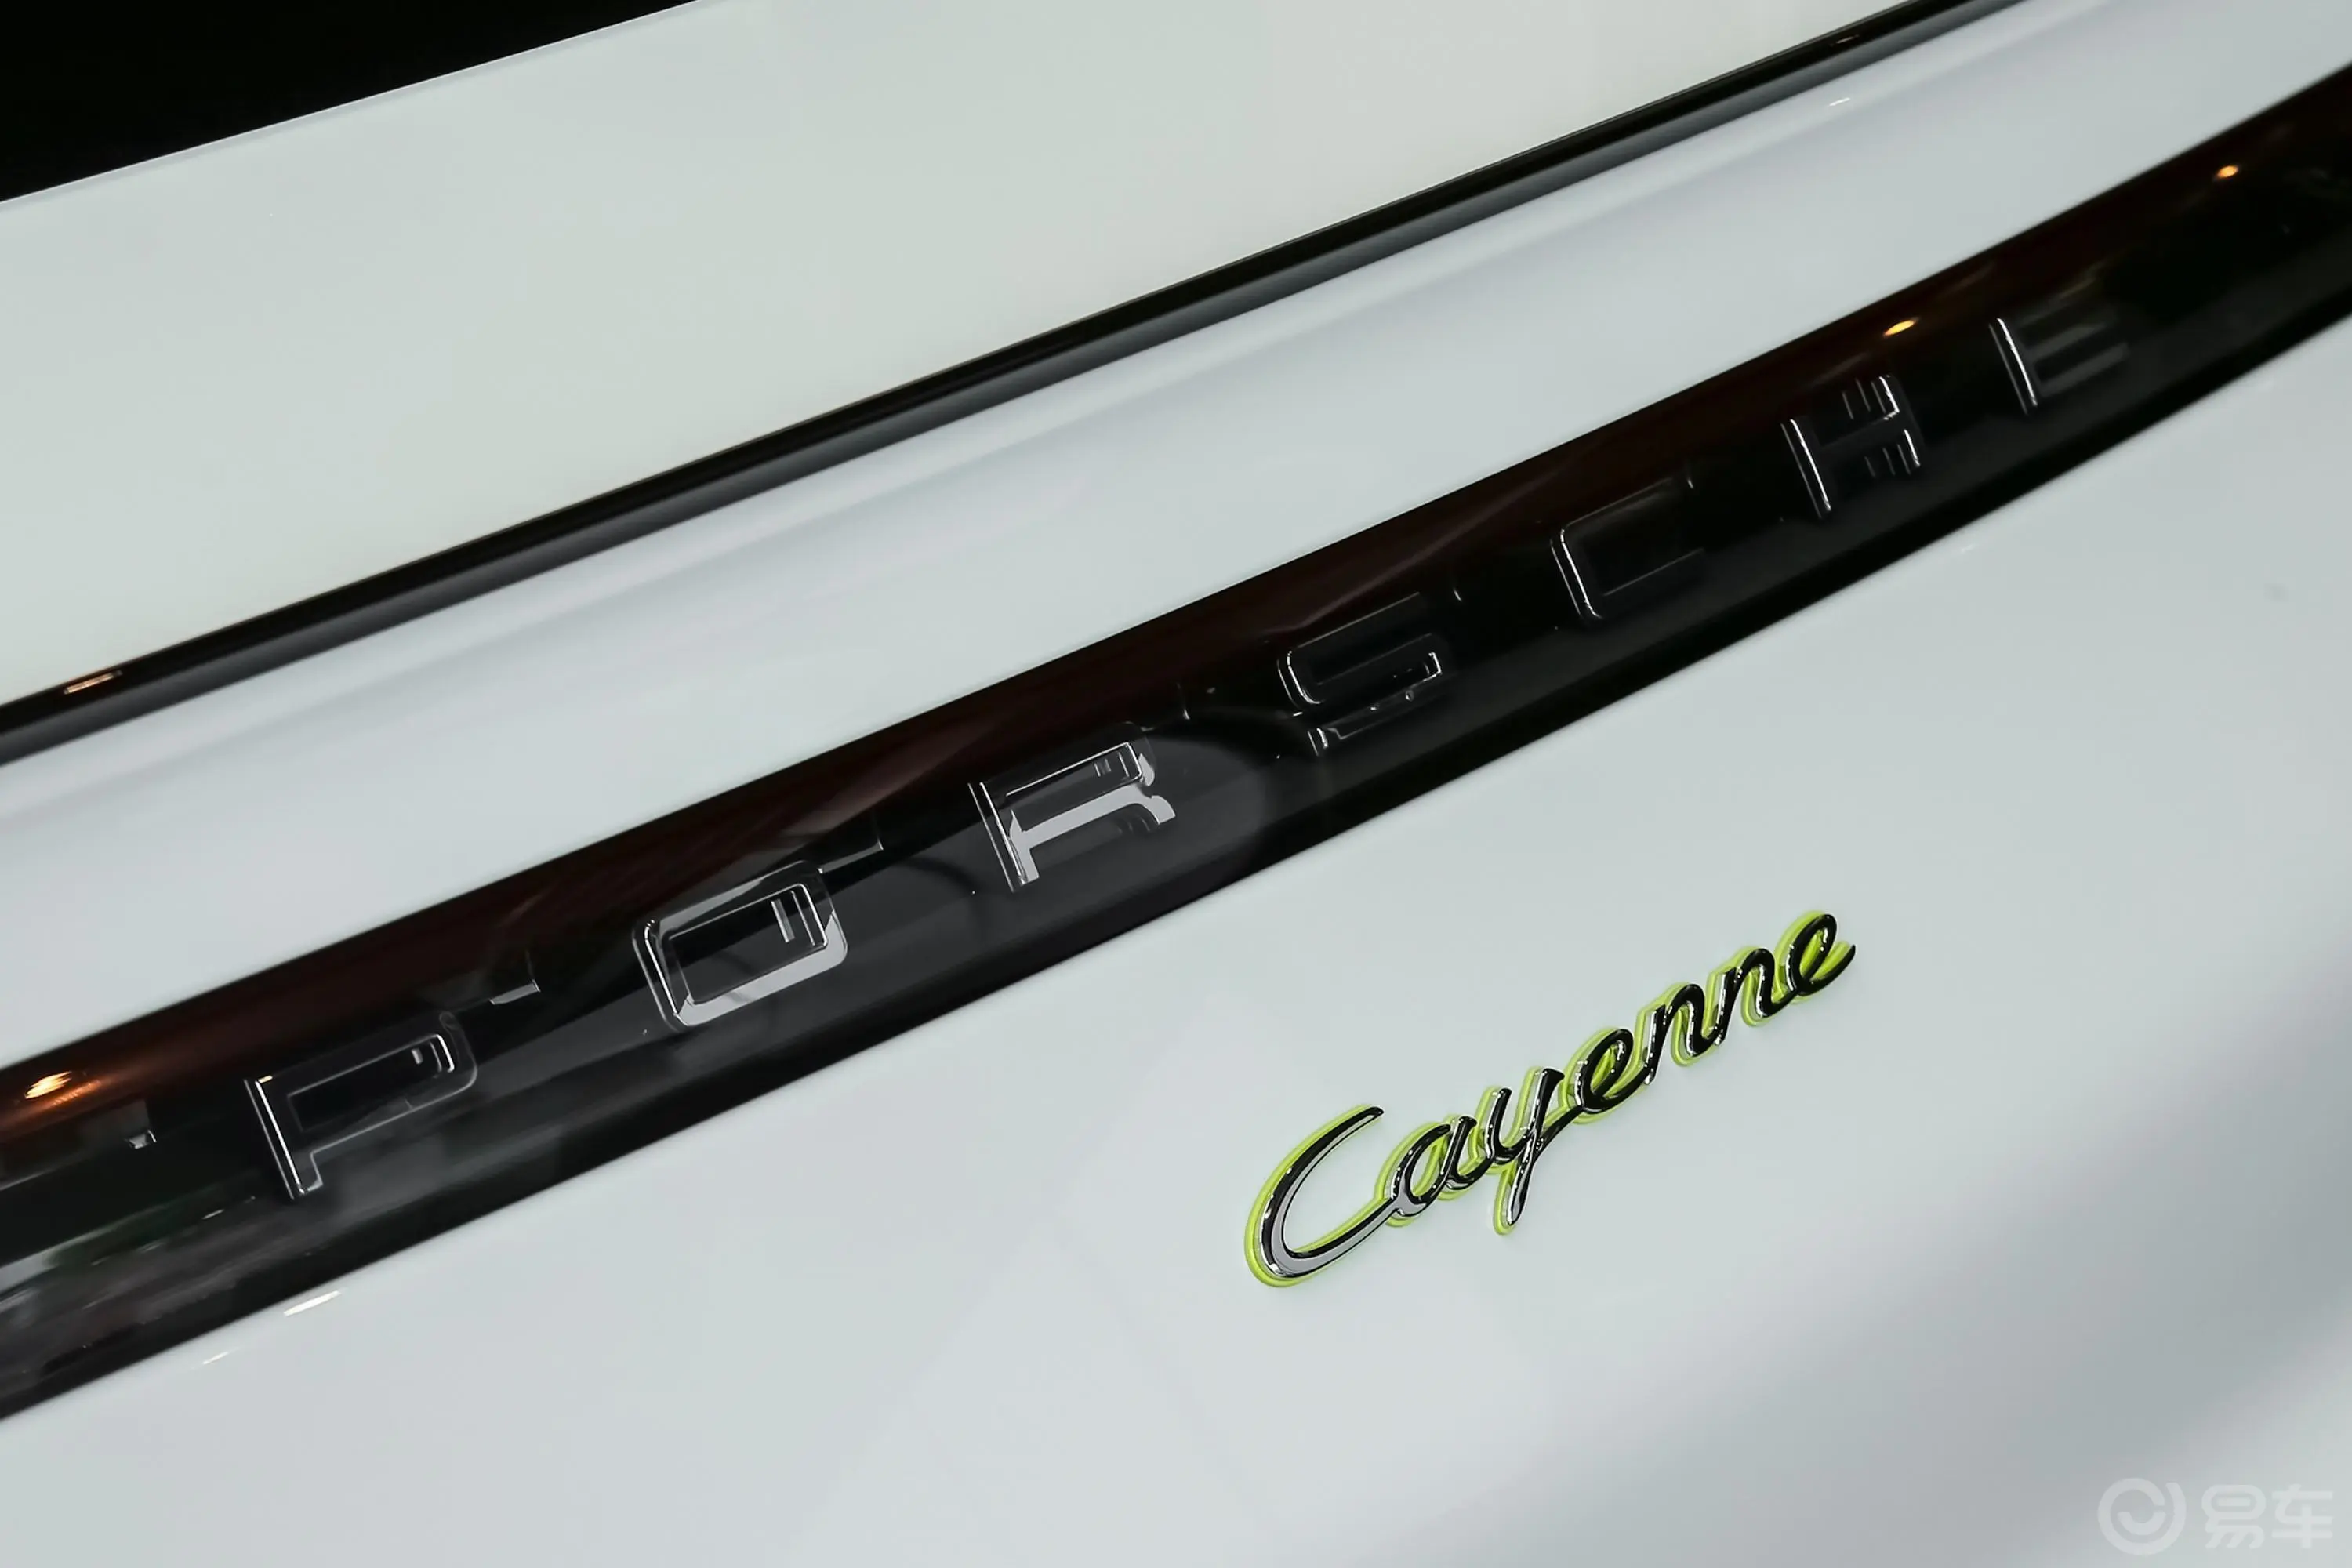 Cayenne E-HybridCayenne E-Hybrid Coupe 2.0T外观